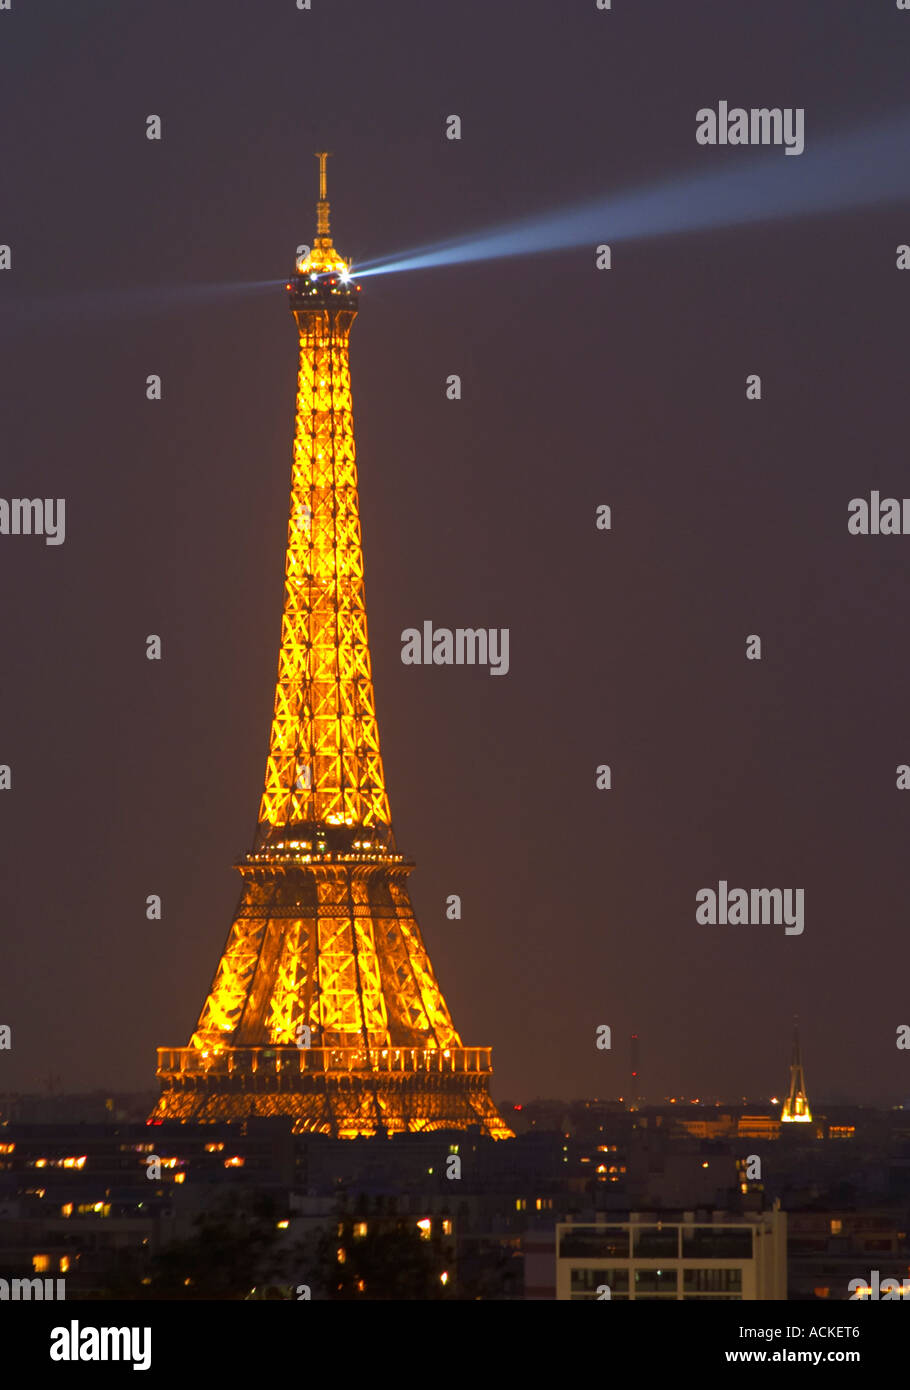 La Tour Eiffel de Paris illuminé de nuit contre un ciel noir bleu foncé, vous pouvez rayon lumineux sur le ciel, l'éclairage jaune d or Paris France Banque D'Images